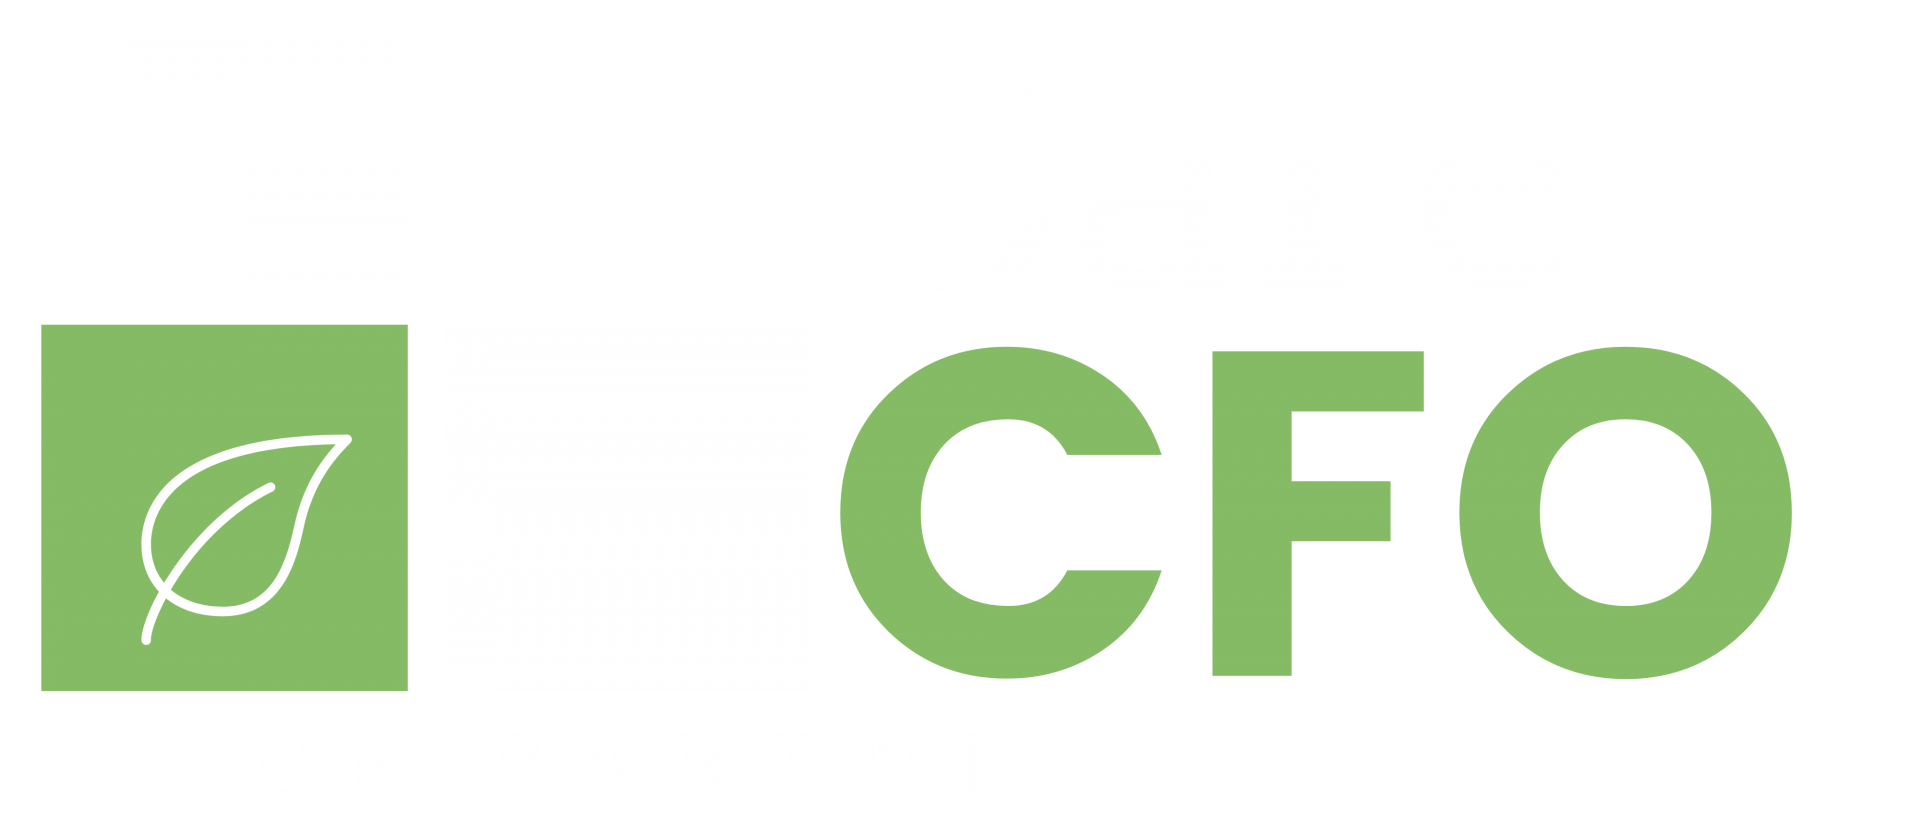 CareCFO Logo Link